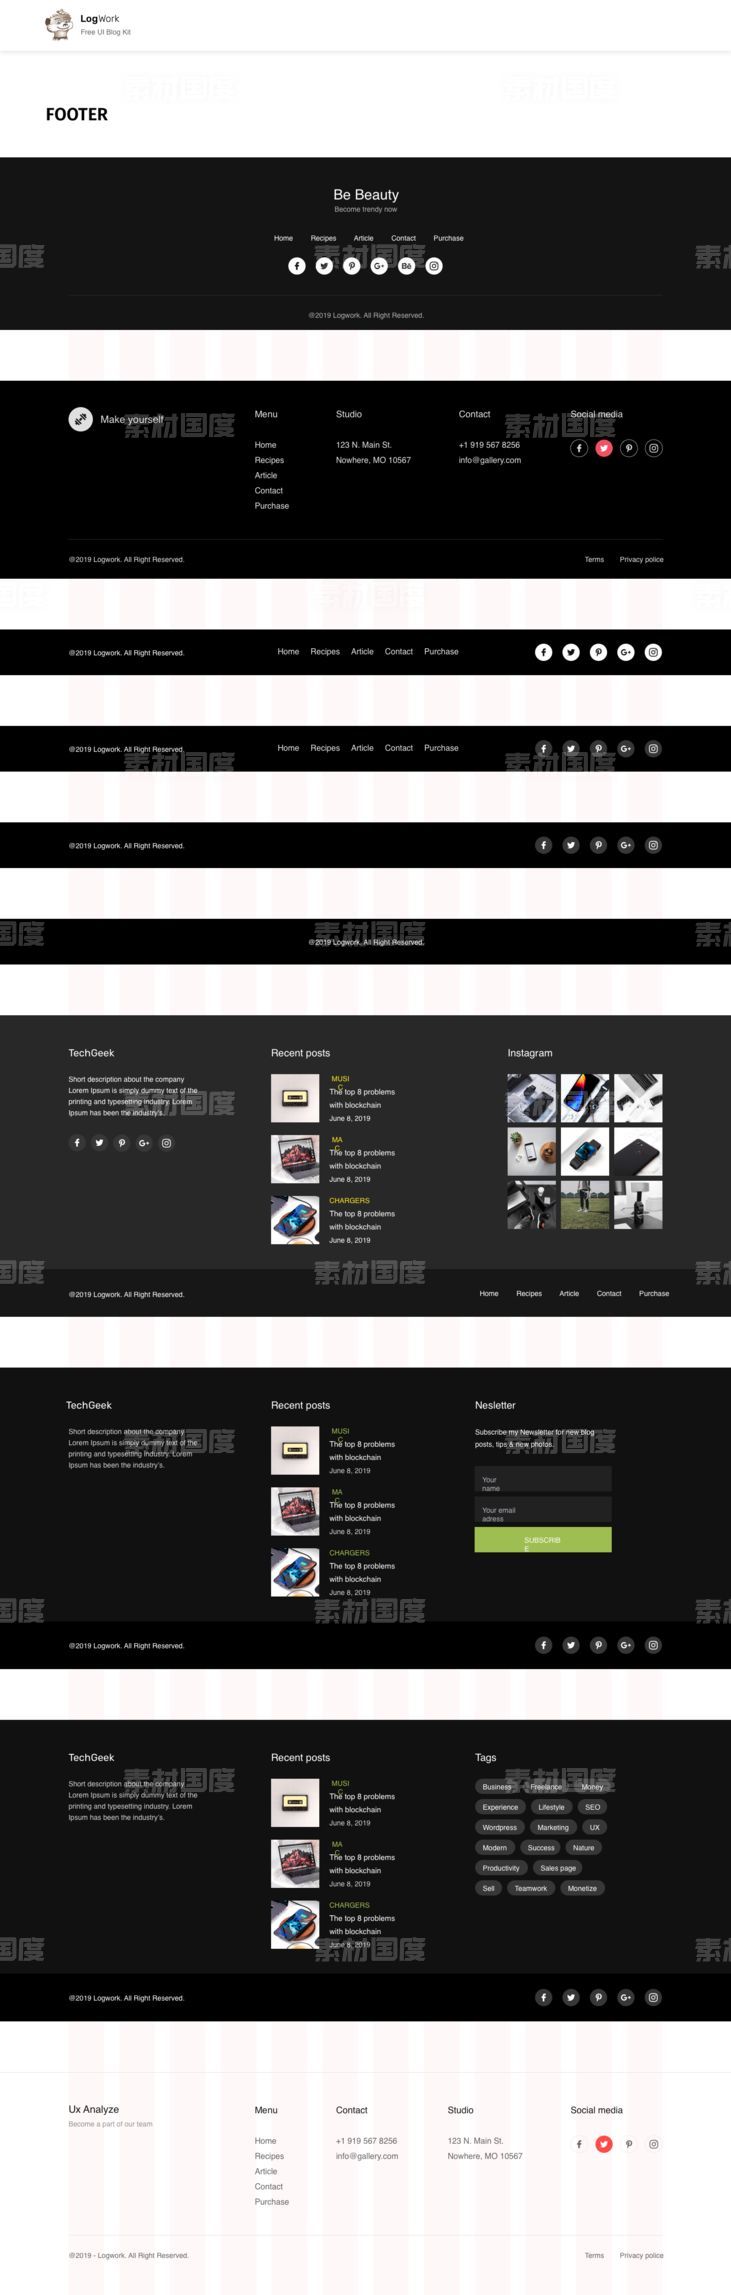 博客网站UI模板 .sketch素材下载